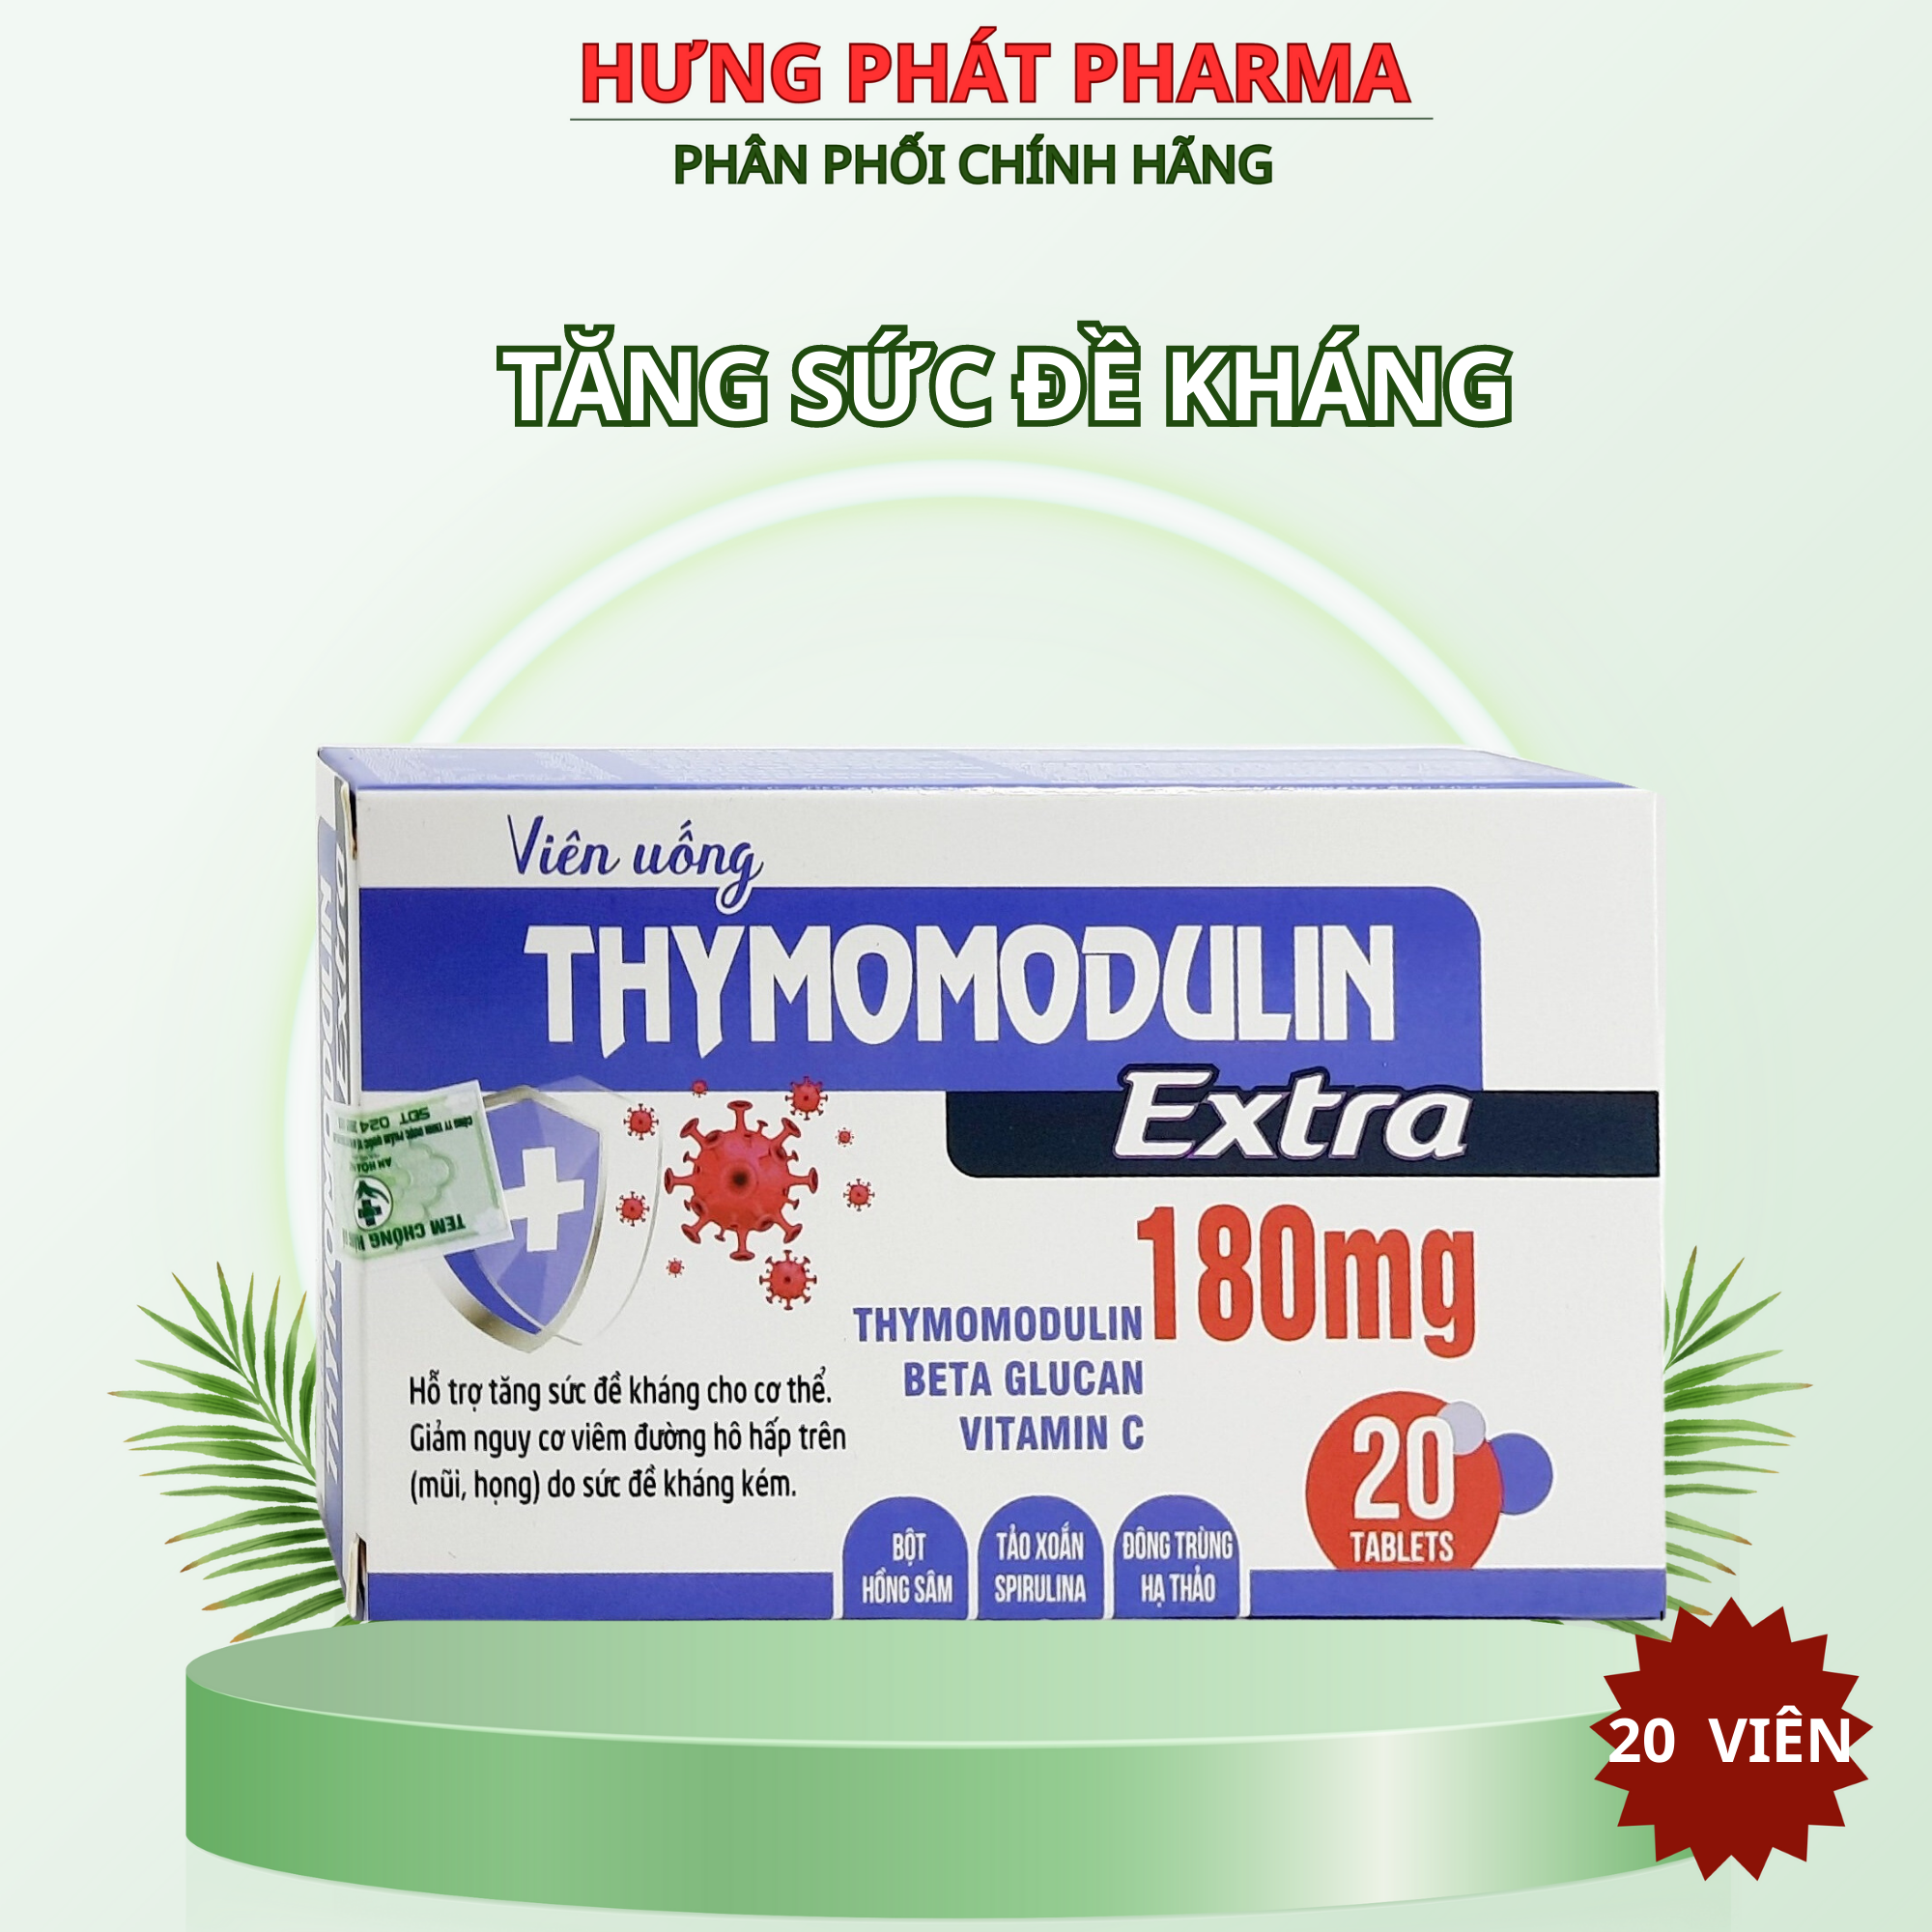 Viên uống Thymomodulin Extra giúp tăng sức đề kháng cho cơ thể